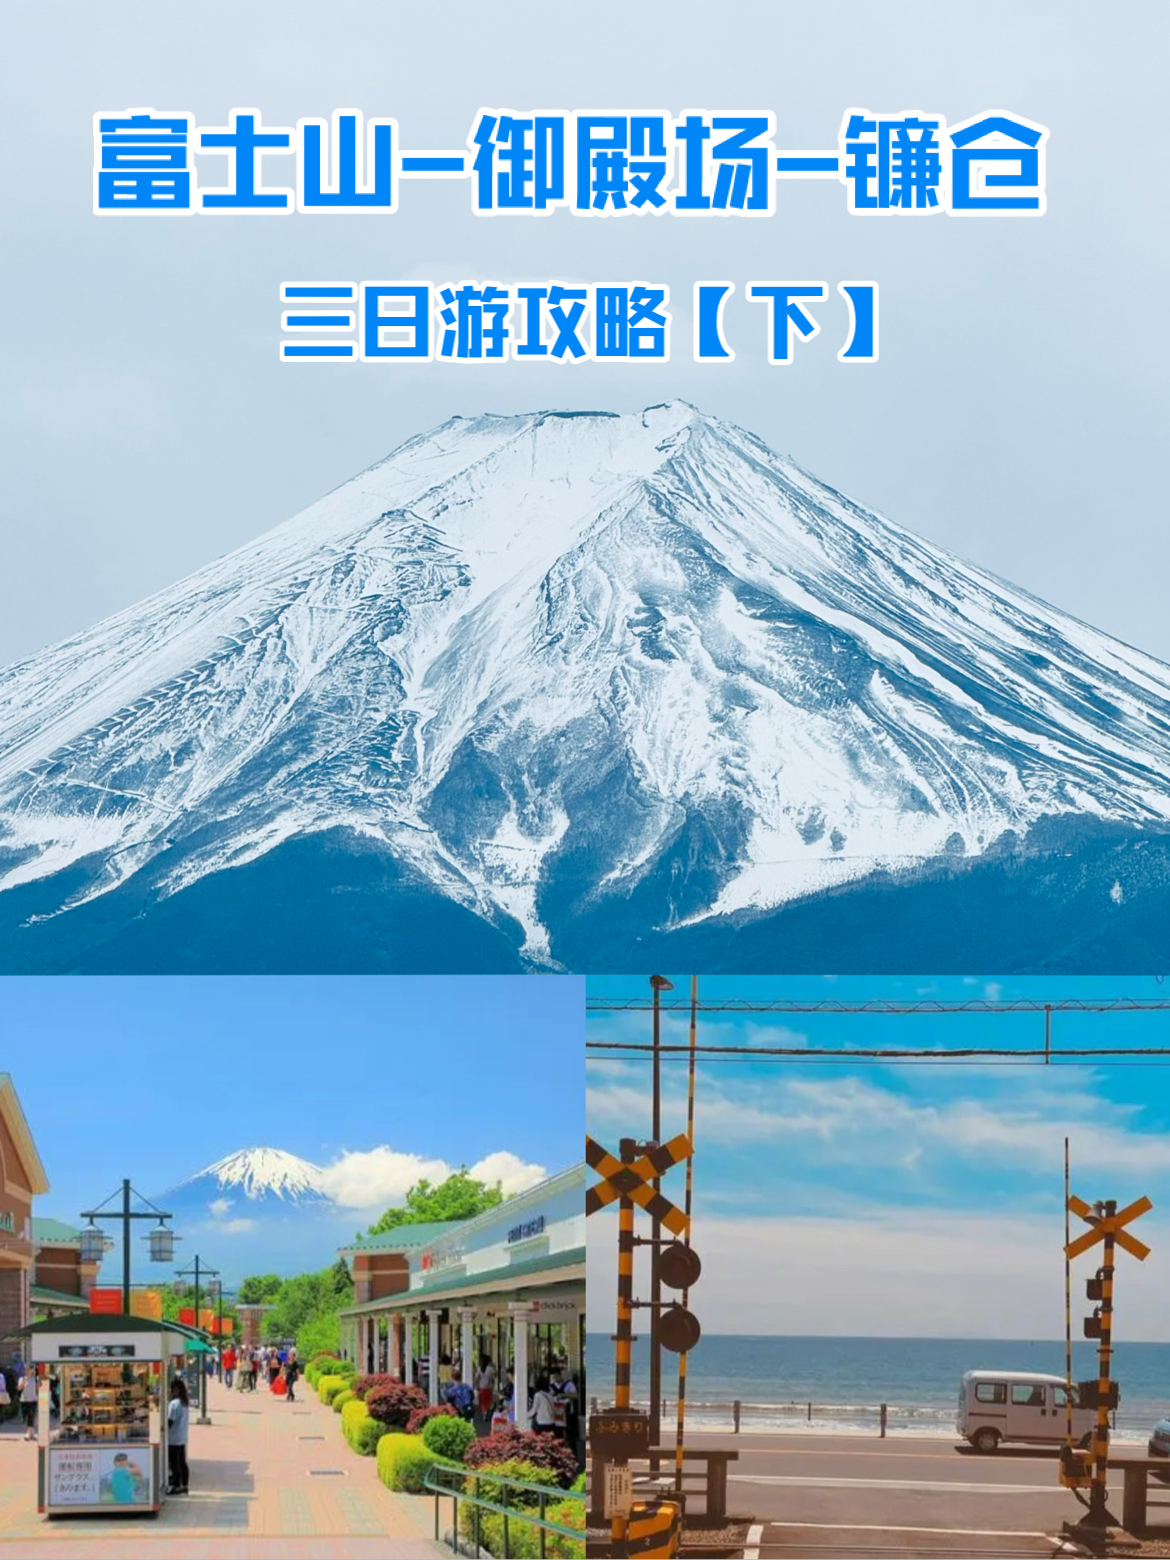 日本 | 富士山御殿场镰仓三日游不走回头路（下）